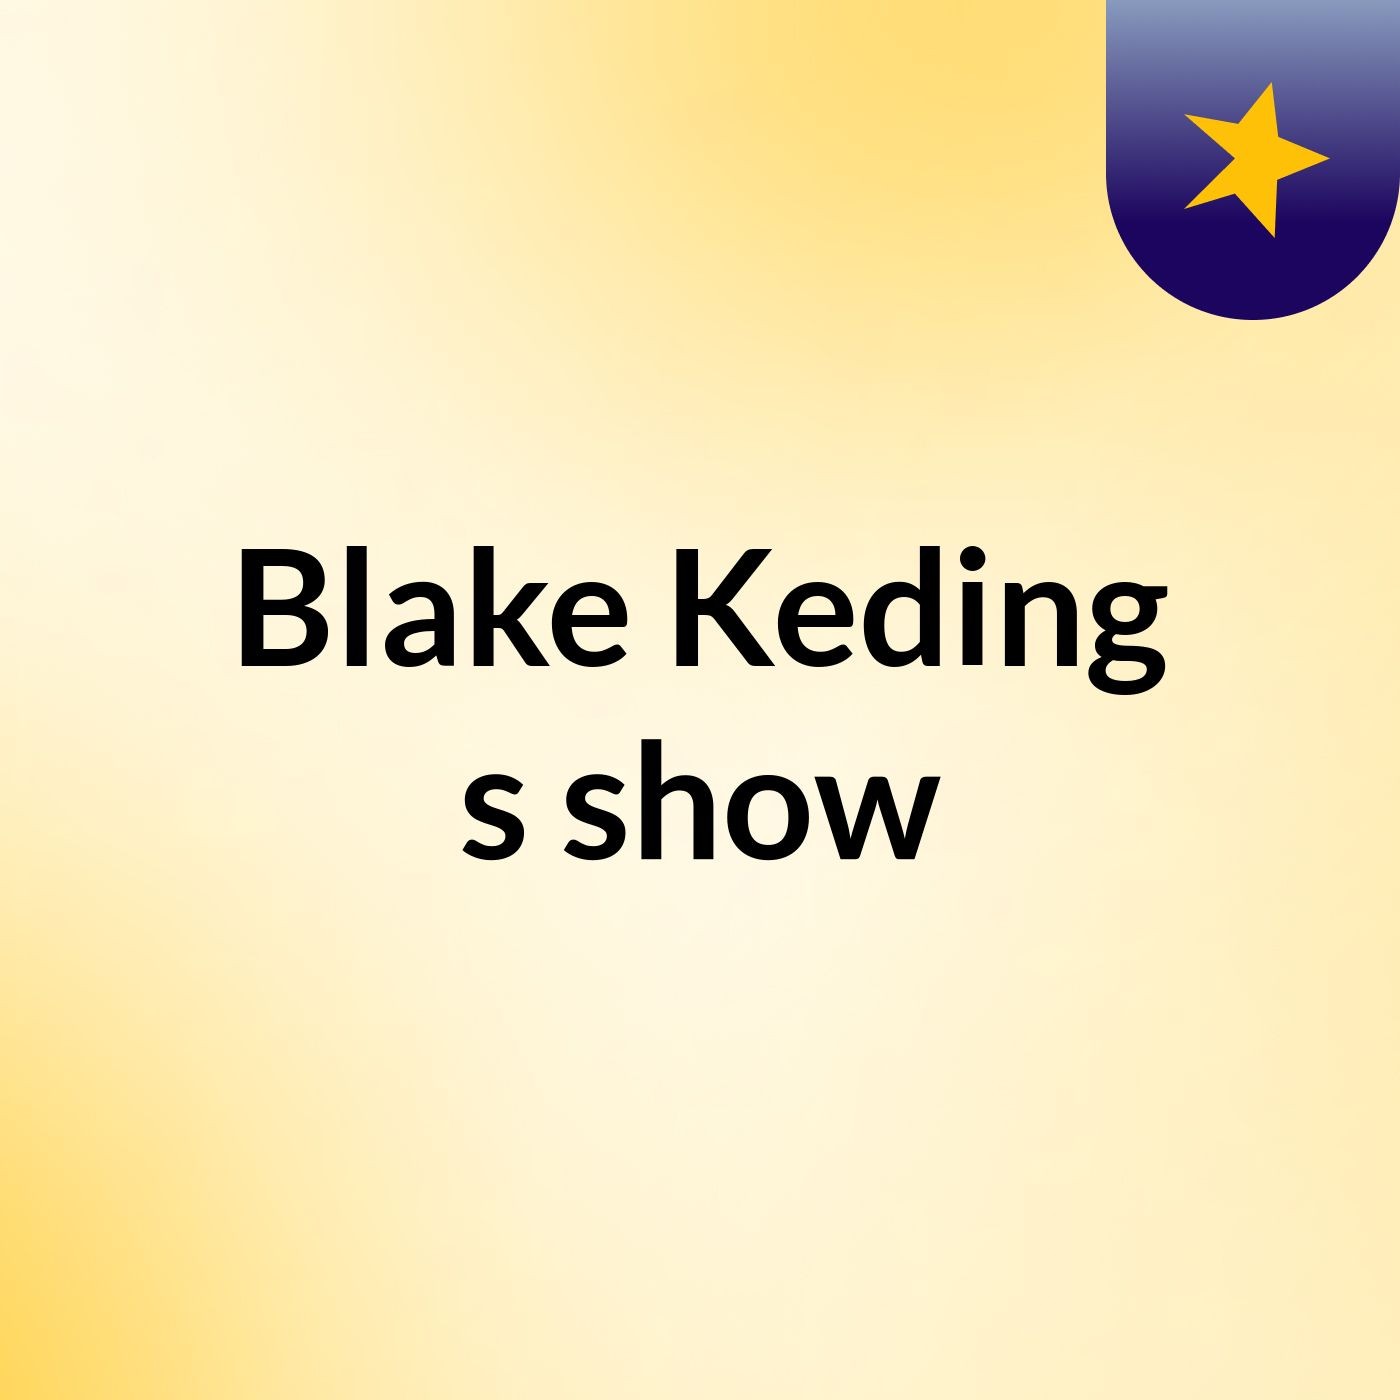 Blake Keding's show